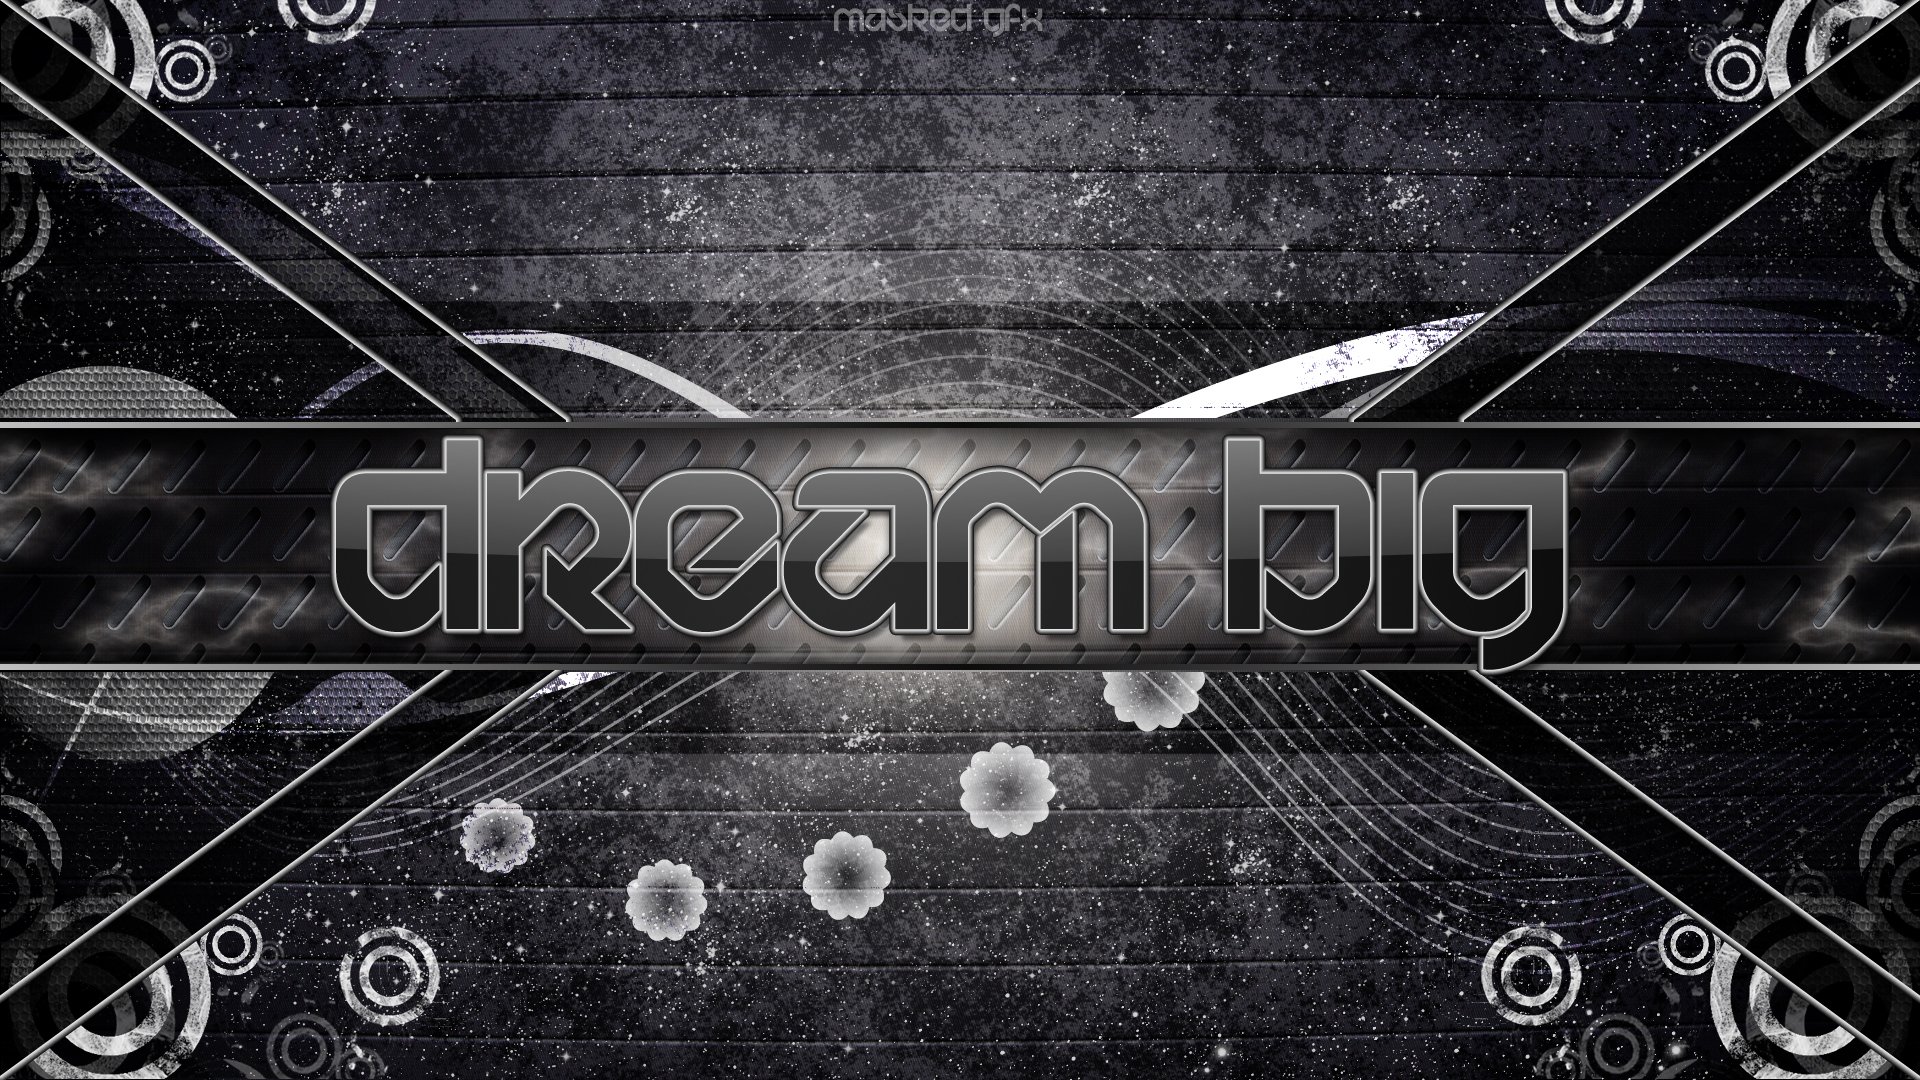 Dream Big by maskedgfx